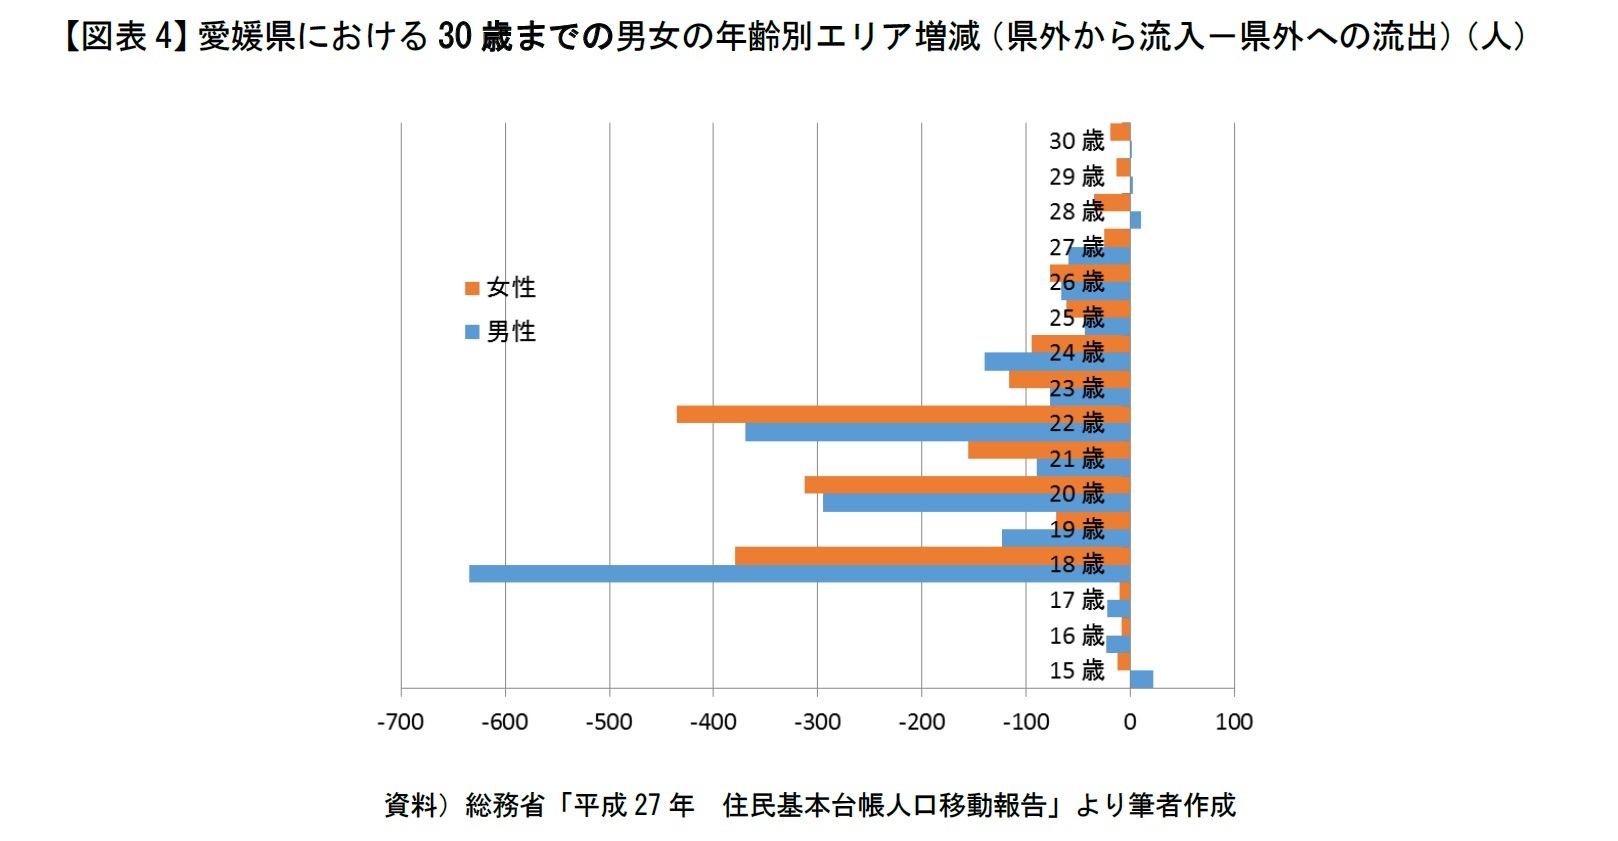 【図表4】愛媛県における30歳までの男女の年齢別エリア増減（県外から流入－県外への流出）（人）